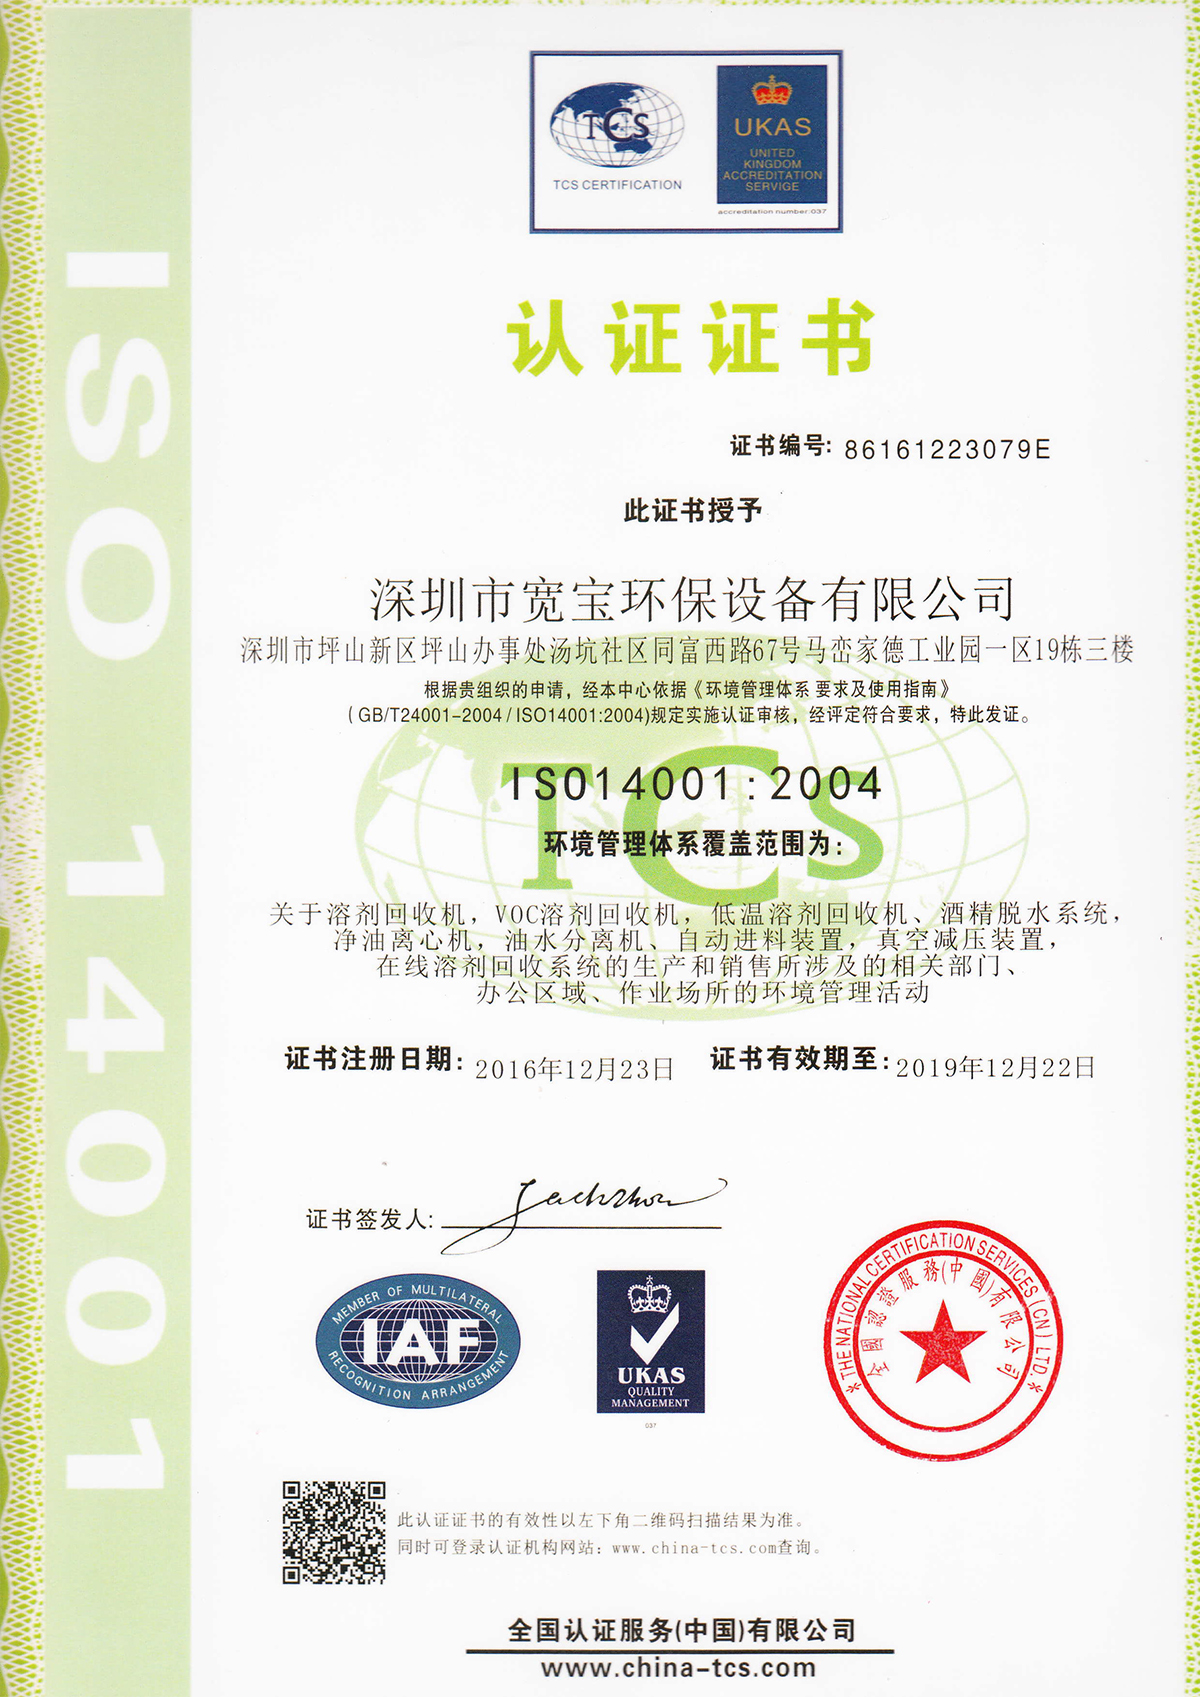 寬寶獲得質量管理體系ISO14001認證